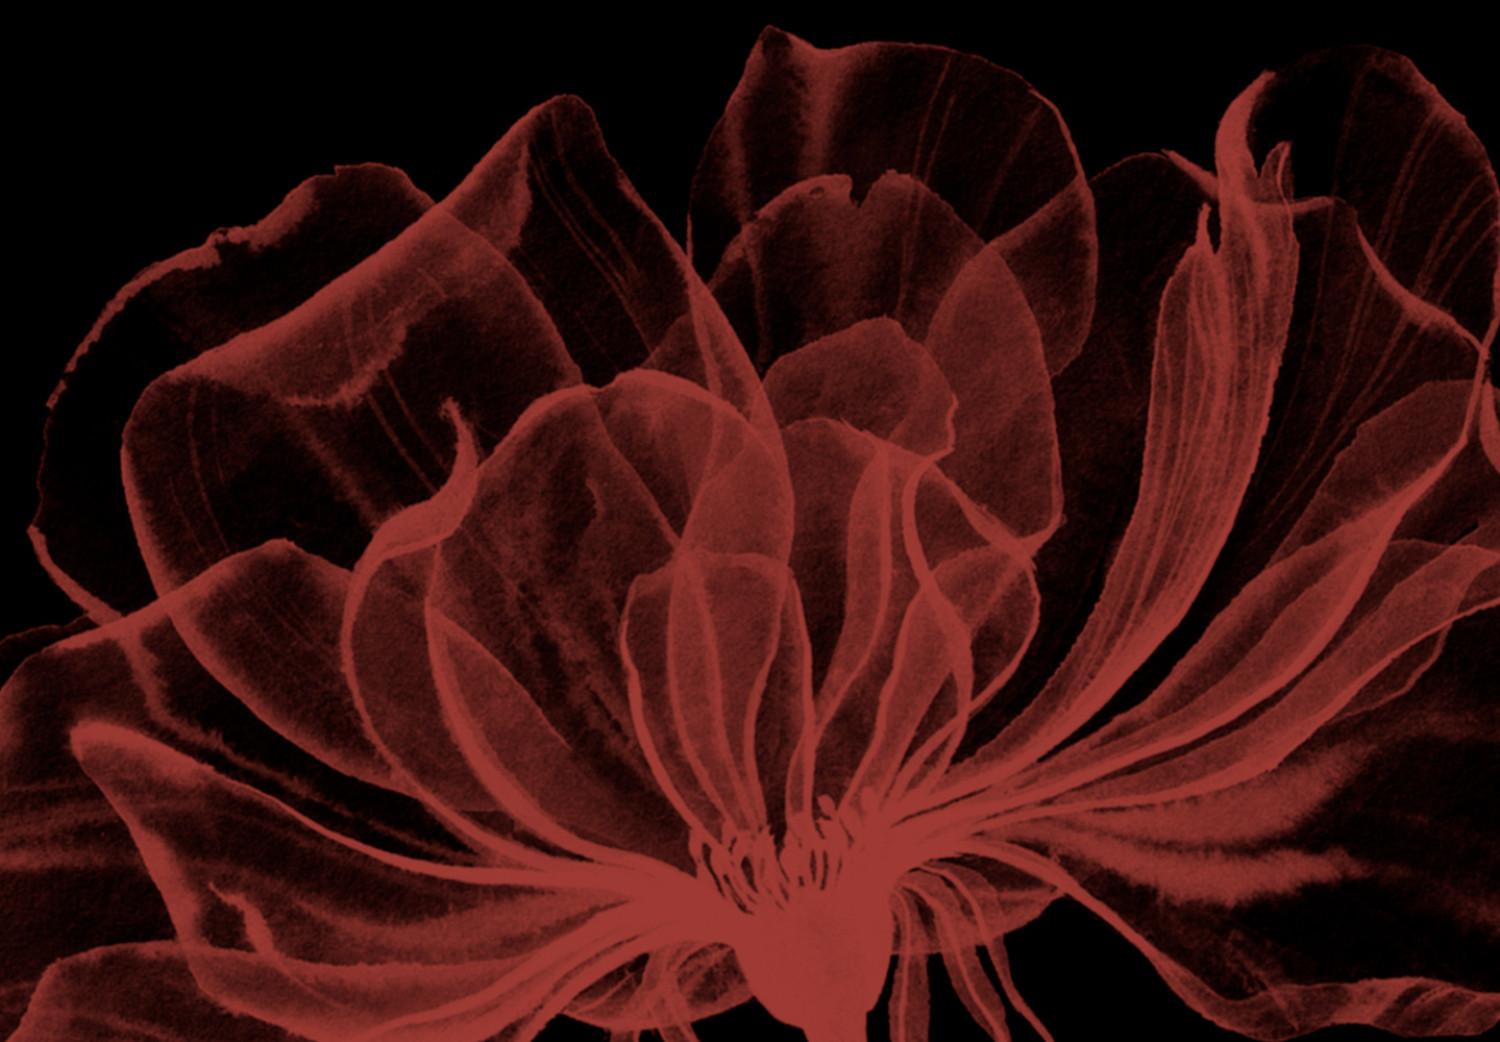 Cuadro Cuatro flores - composición con motivos florales sobre fondo negro